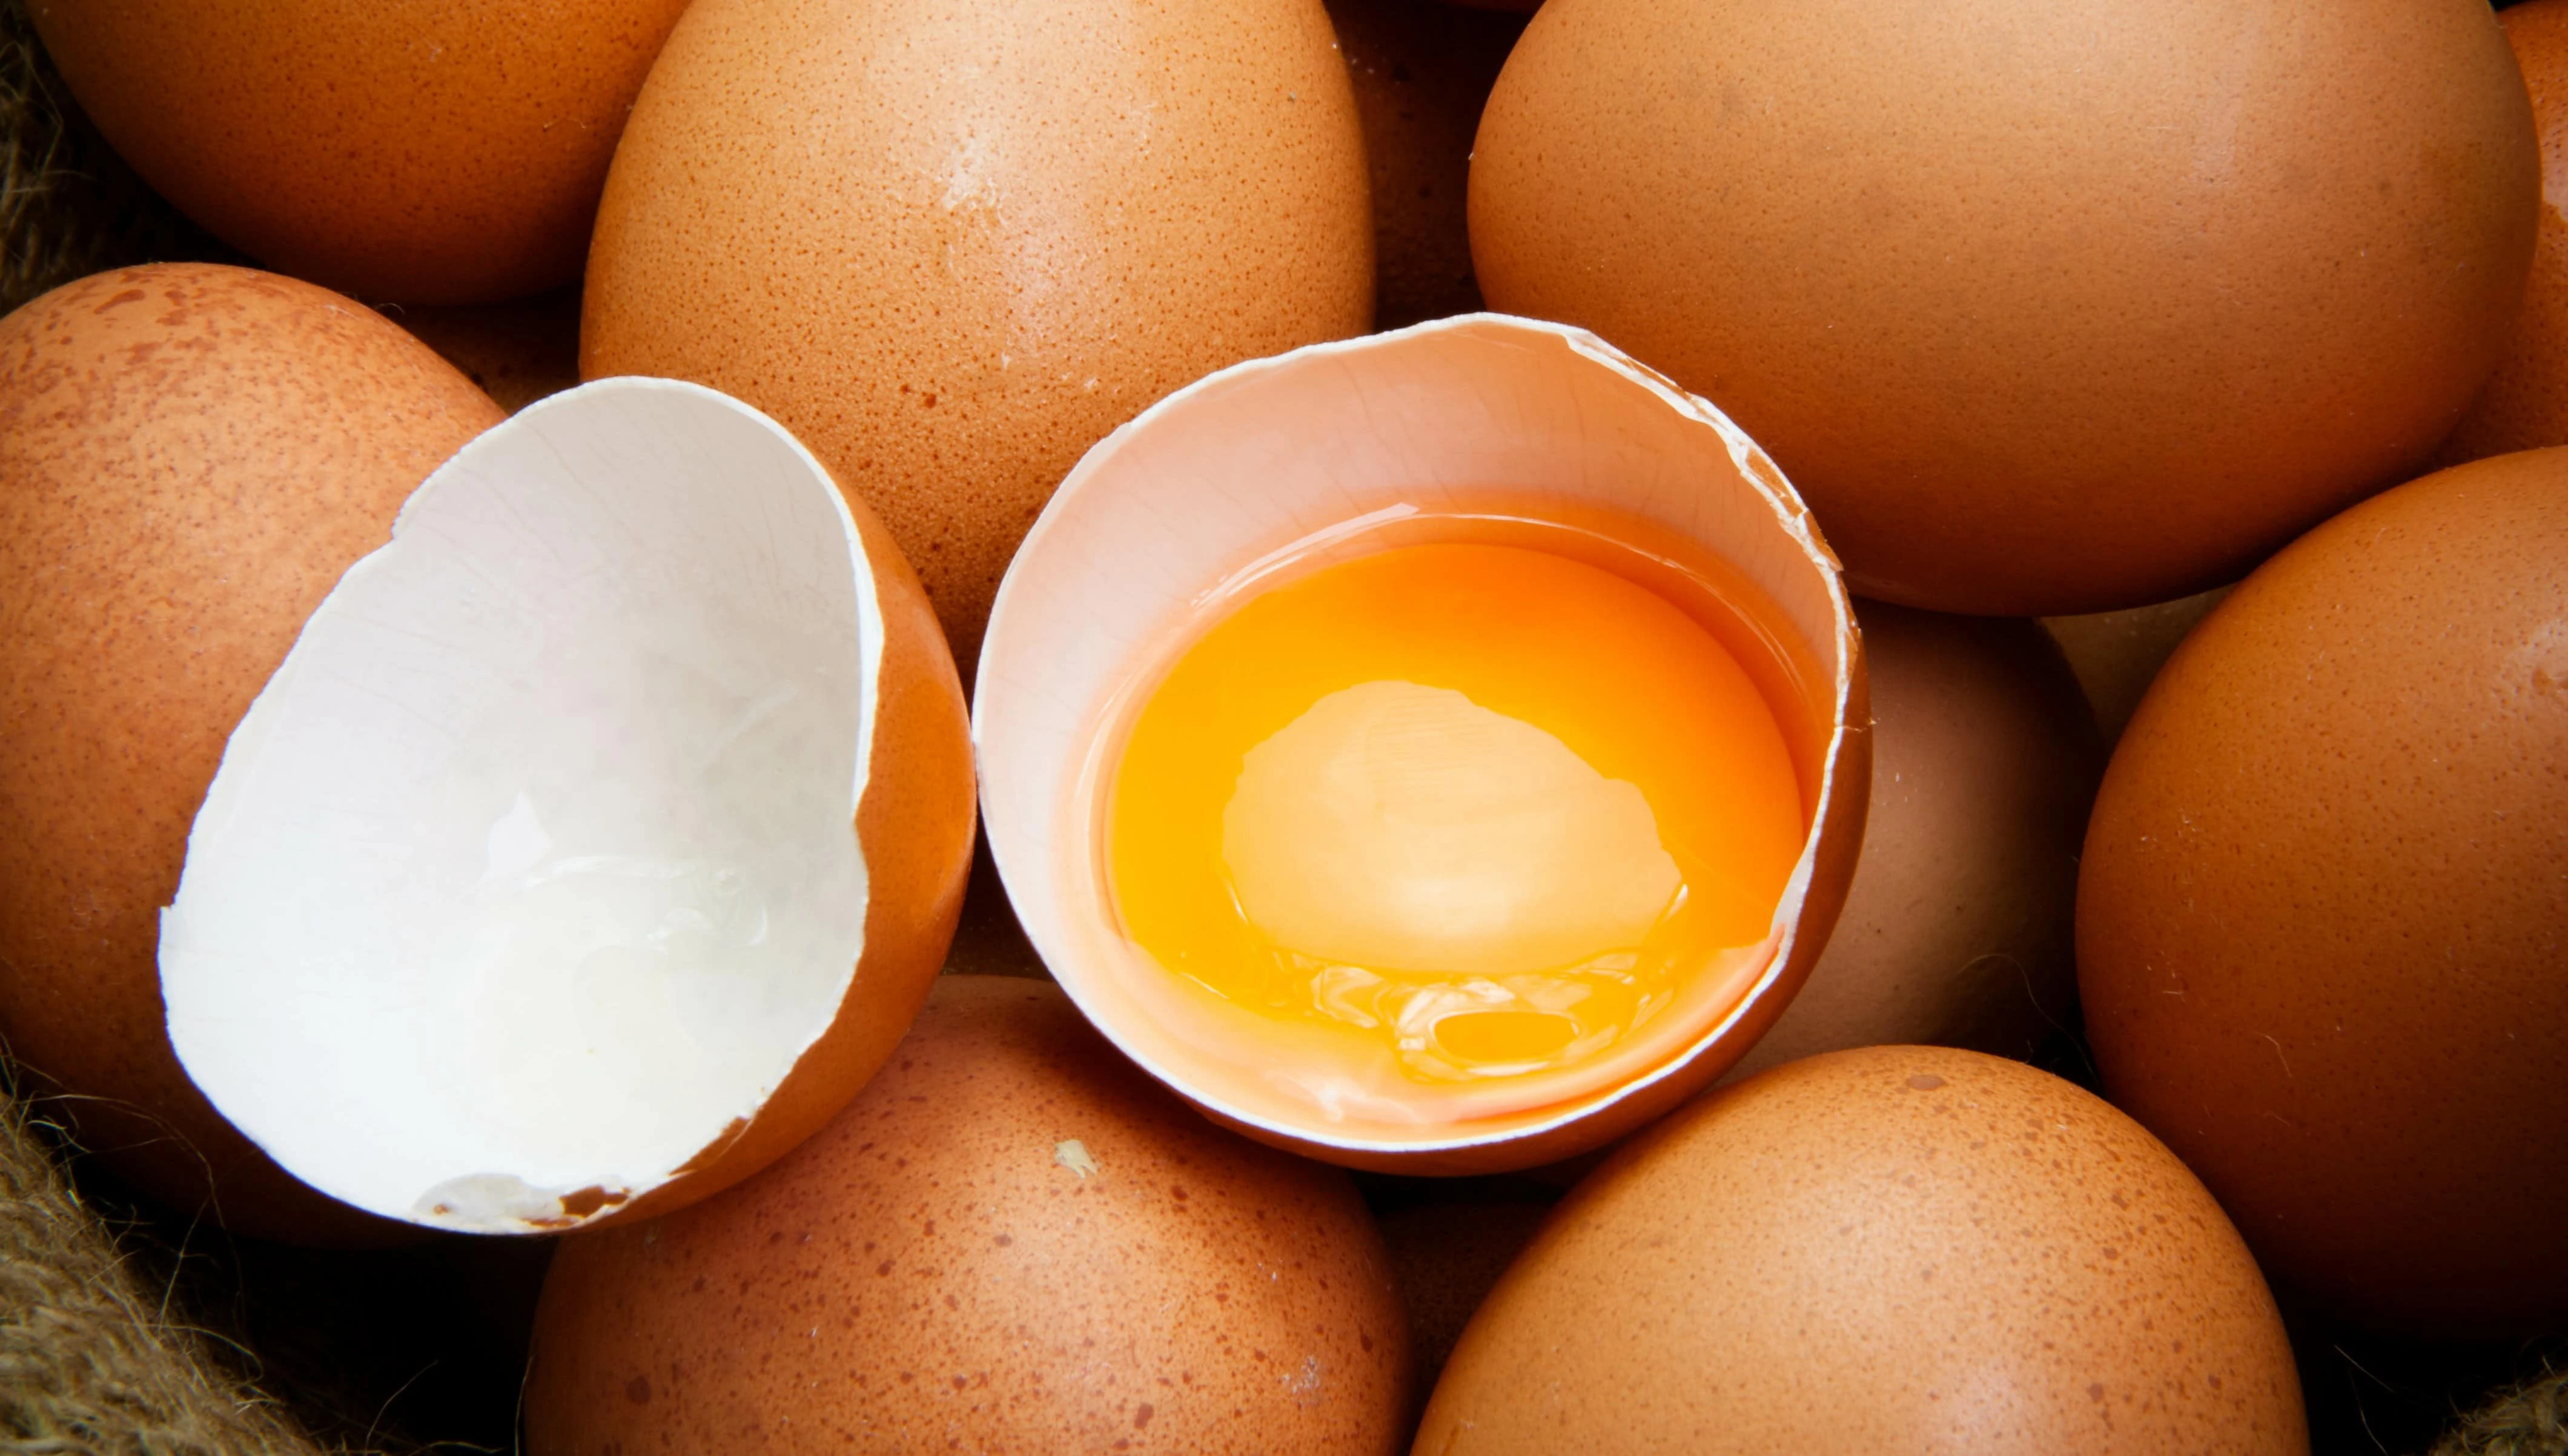 le uova fanno bene o fanno male nella dieta